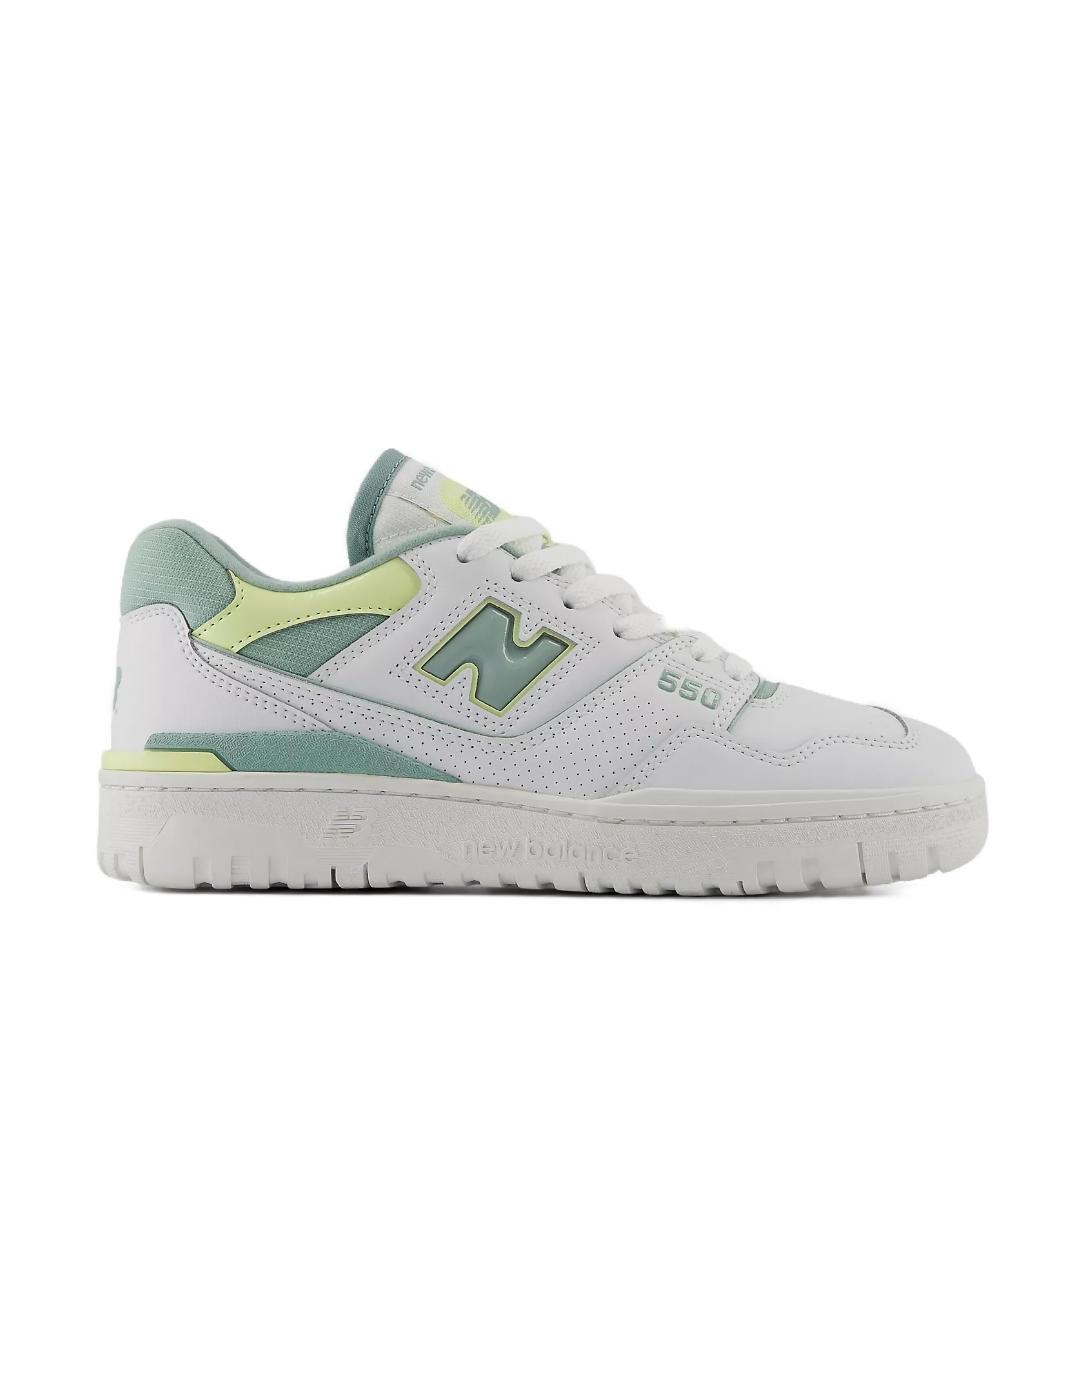 Zapatillas New Balance 550 blanca y verde mujer-NE